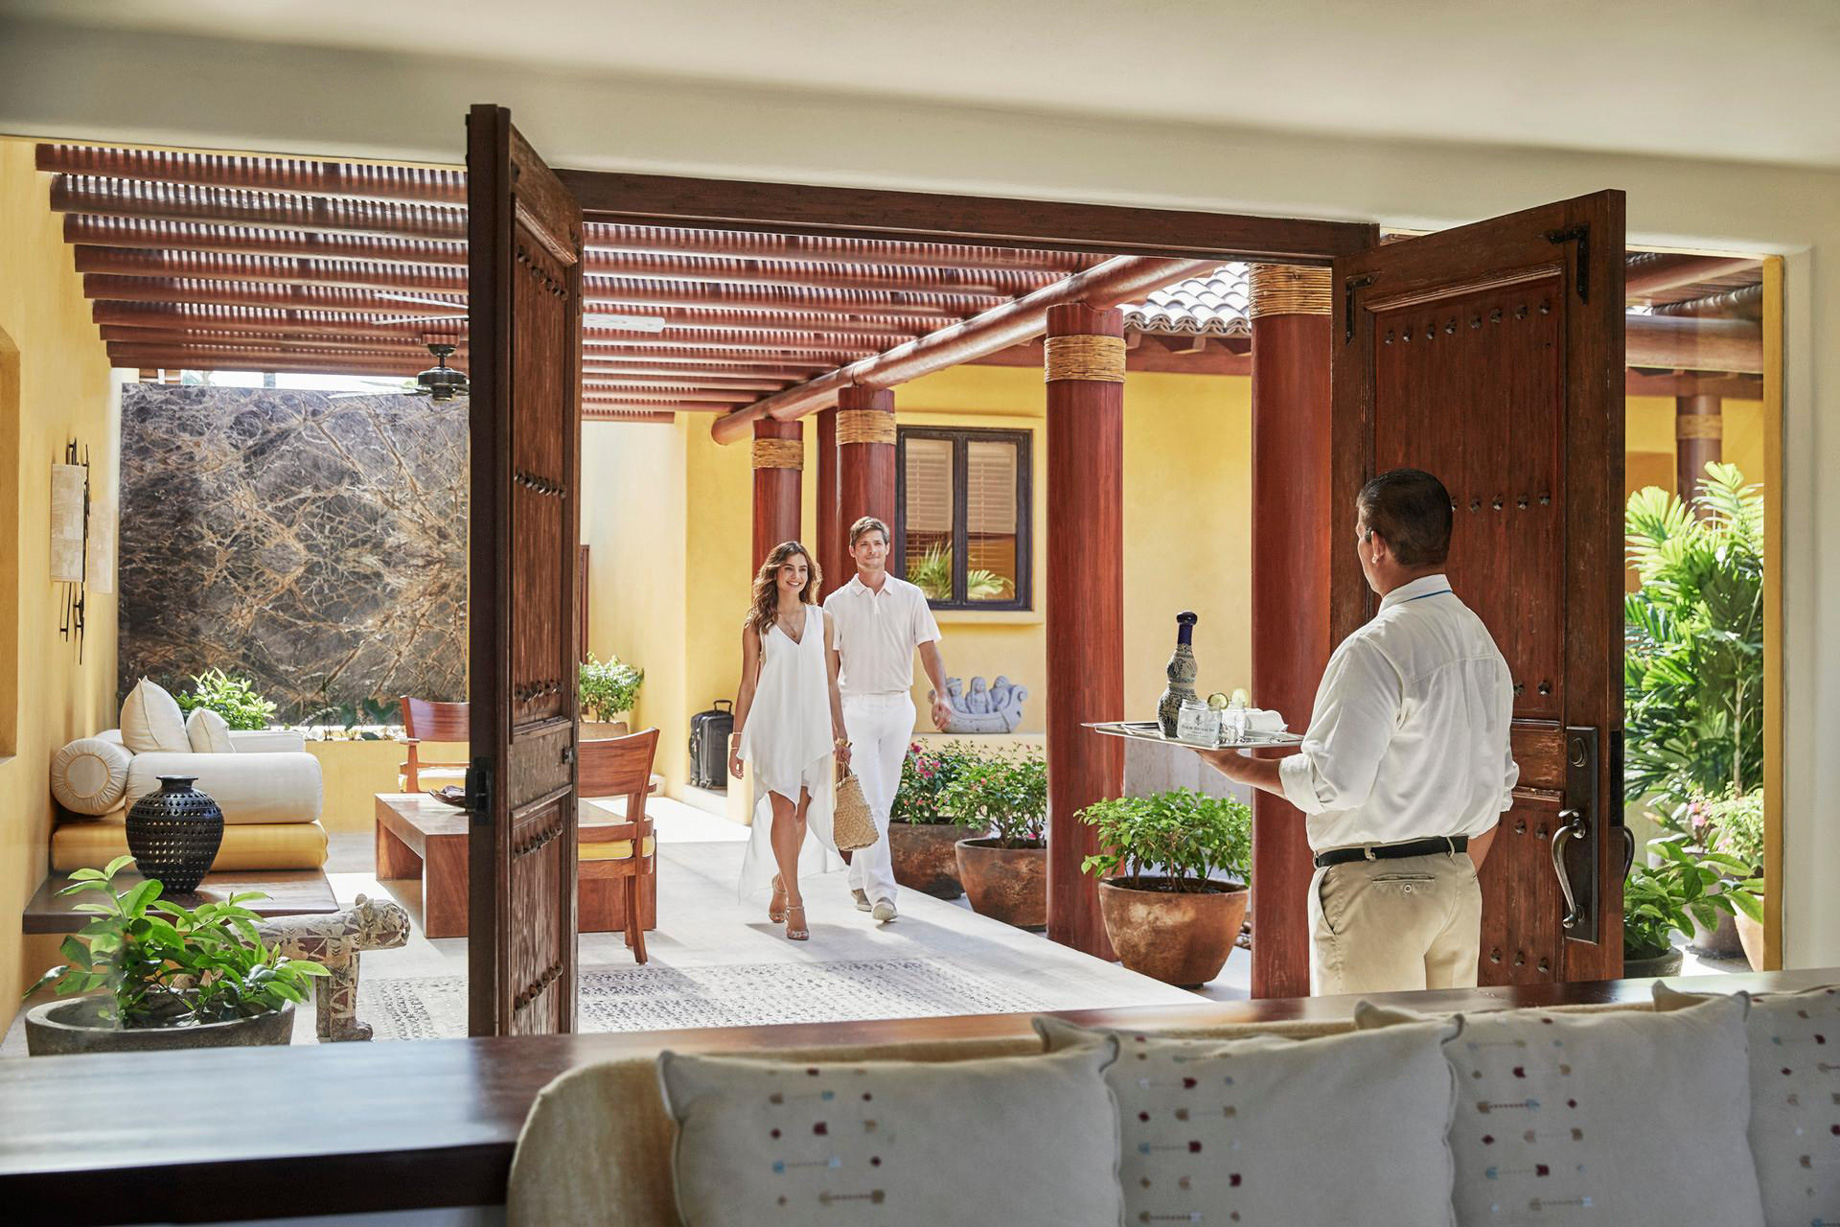 Four Seasons Resort Punta Mita – Nayarit, Mexico – Couple Arriving at Resort